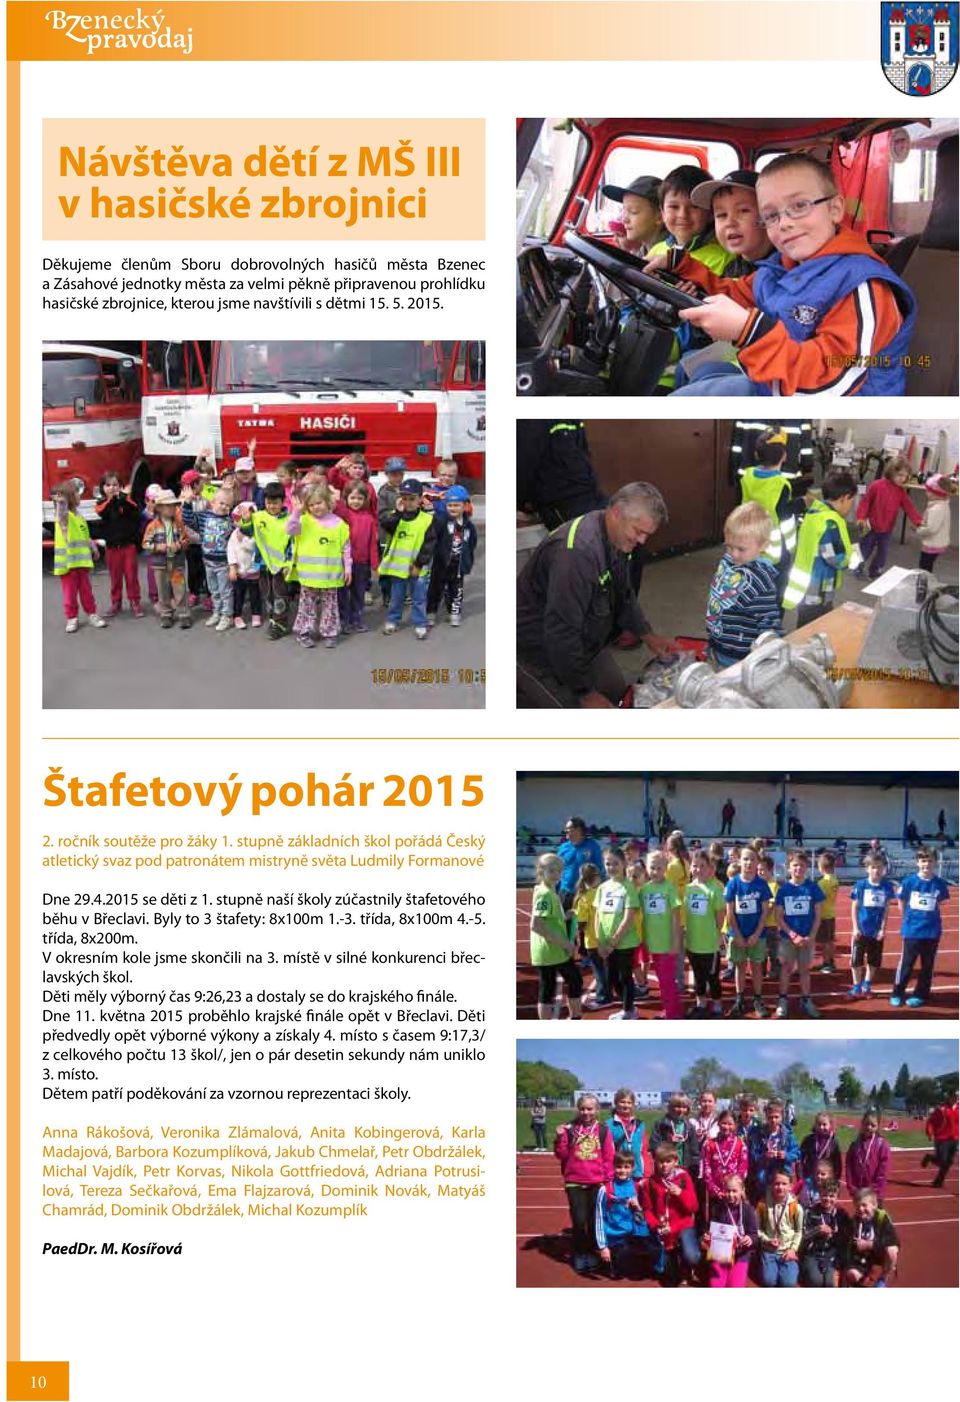 2015 se děti z 1. stupně naší školy zúčastnily štafetového běhu v Břeclavi. Byly to 3 štafety: 8x100m 1.-3. třída, 8x100m 4.-5. třída, 8x200m. V okresním kole jsme skončili na 3.